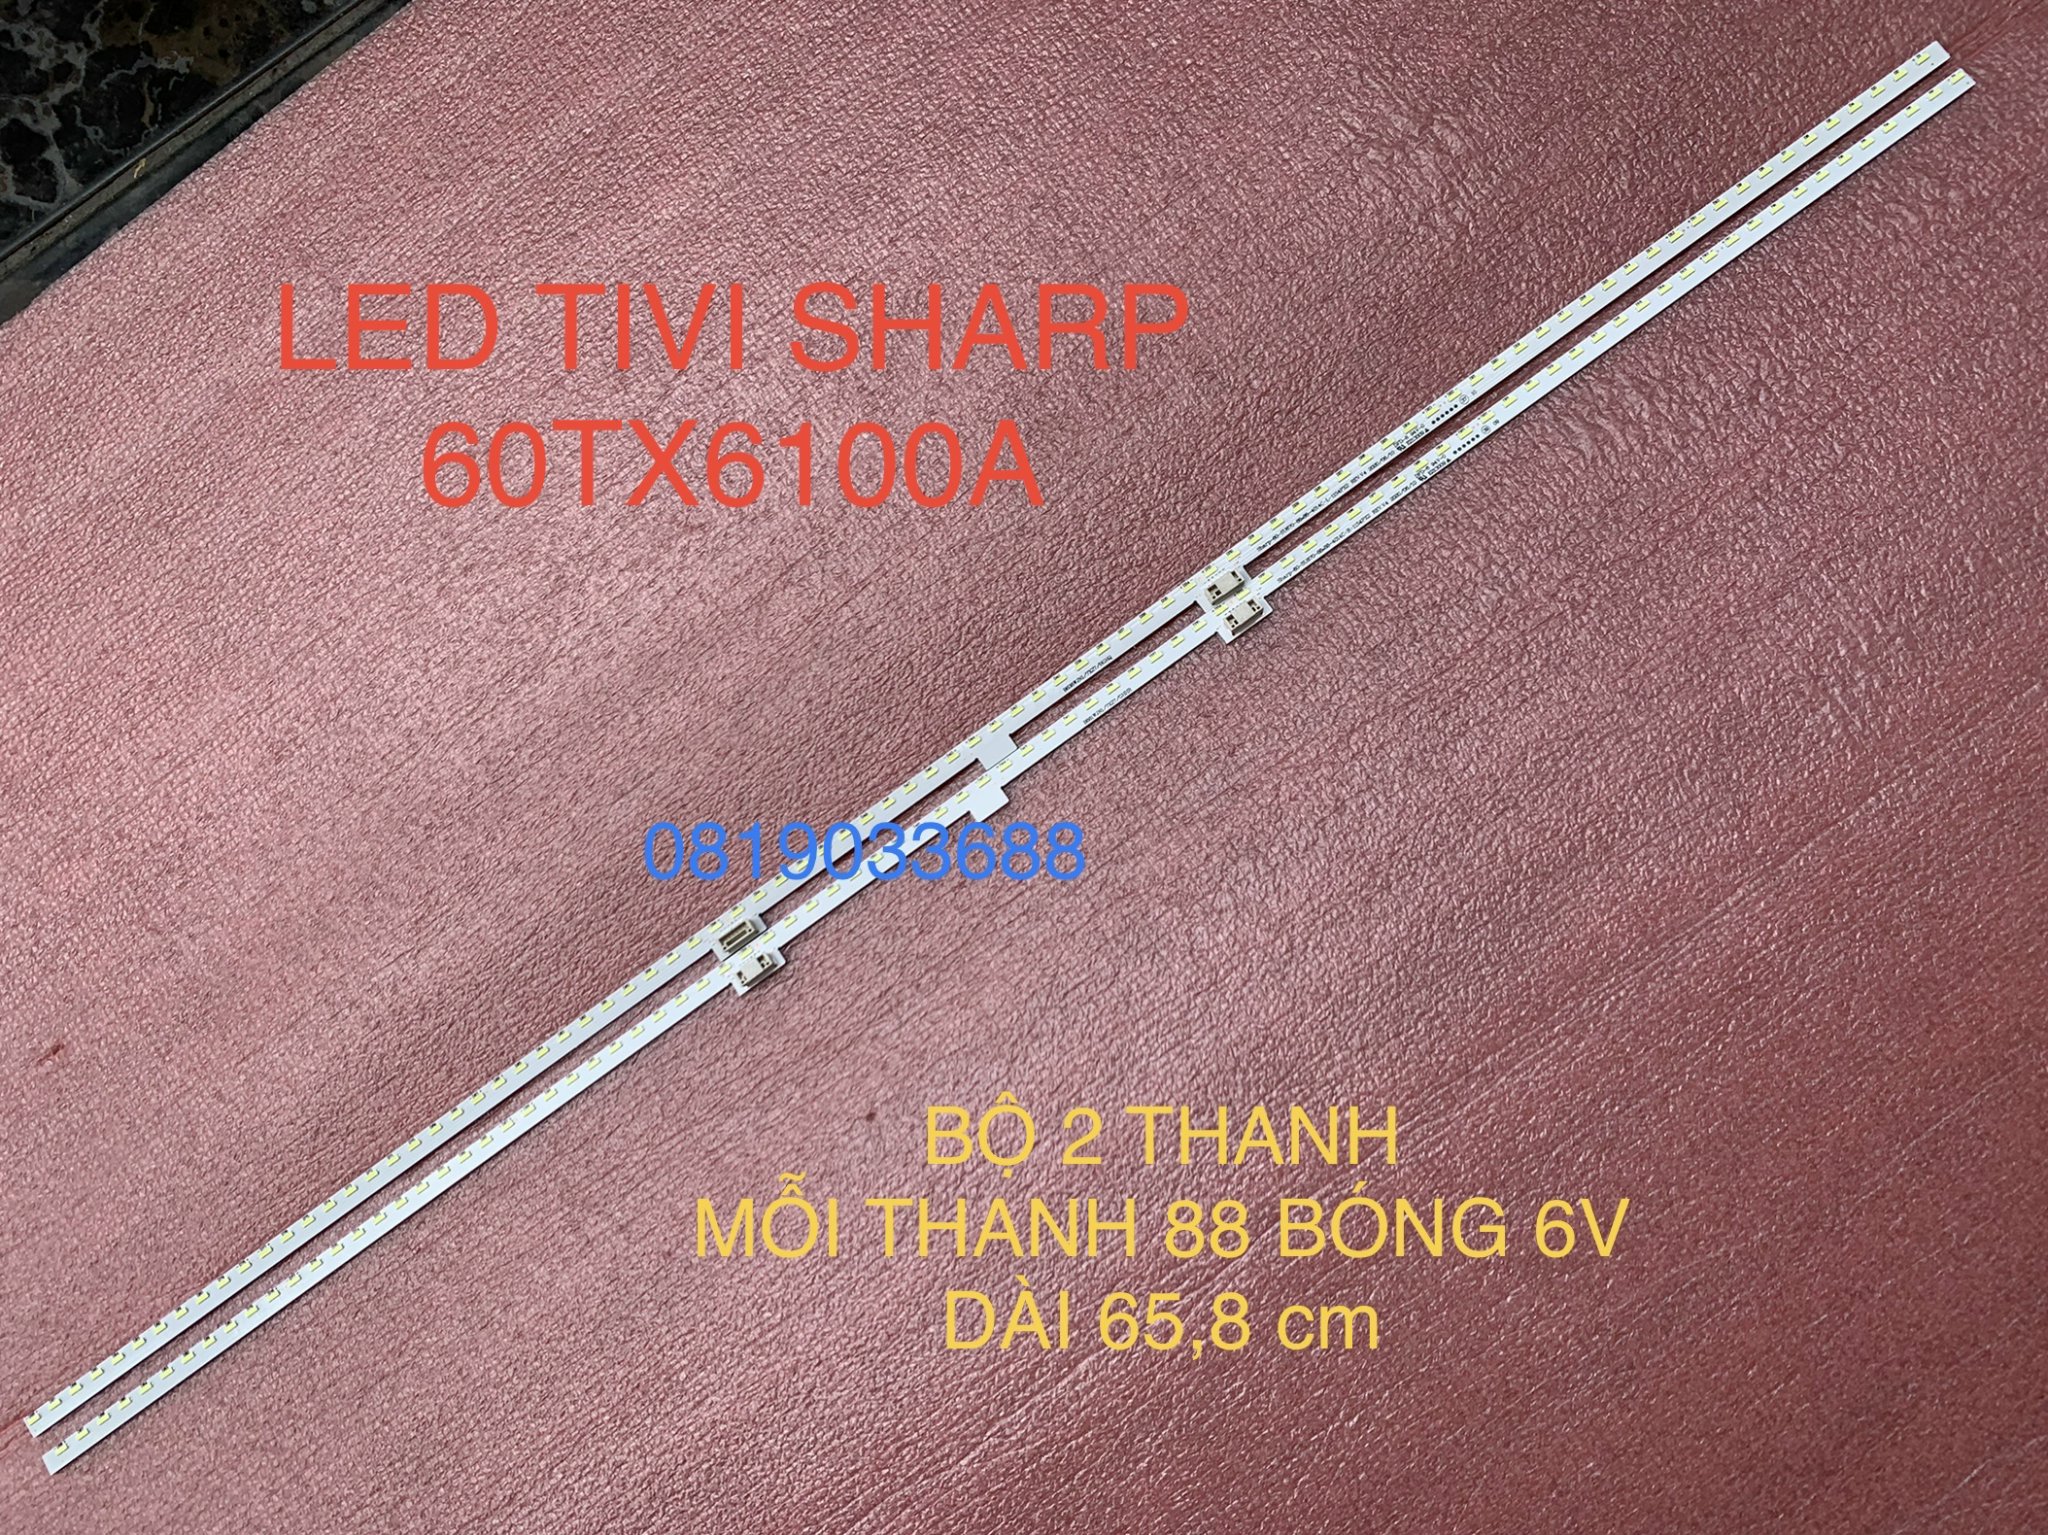 THANH LED TIVI SHARP 60TX6100 SHARP-60-US670-88+88-4014C-L R-11S4PX2